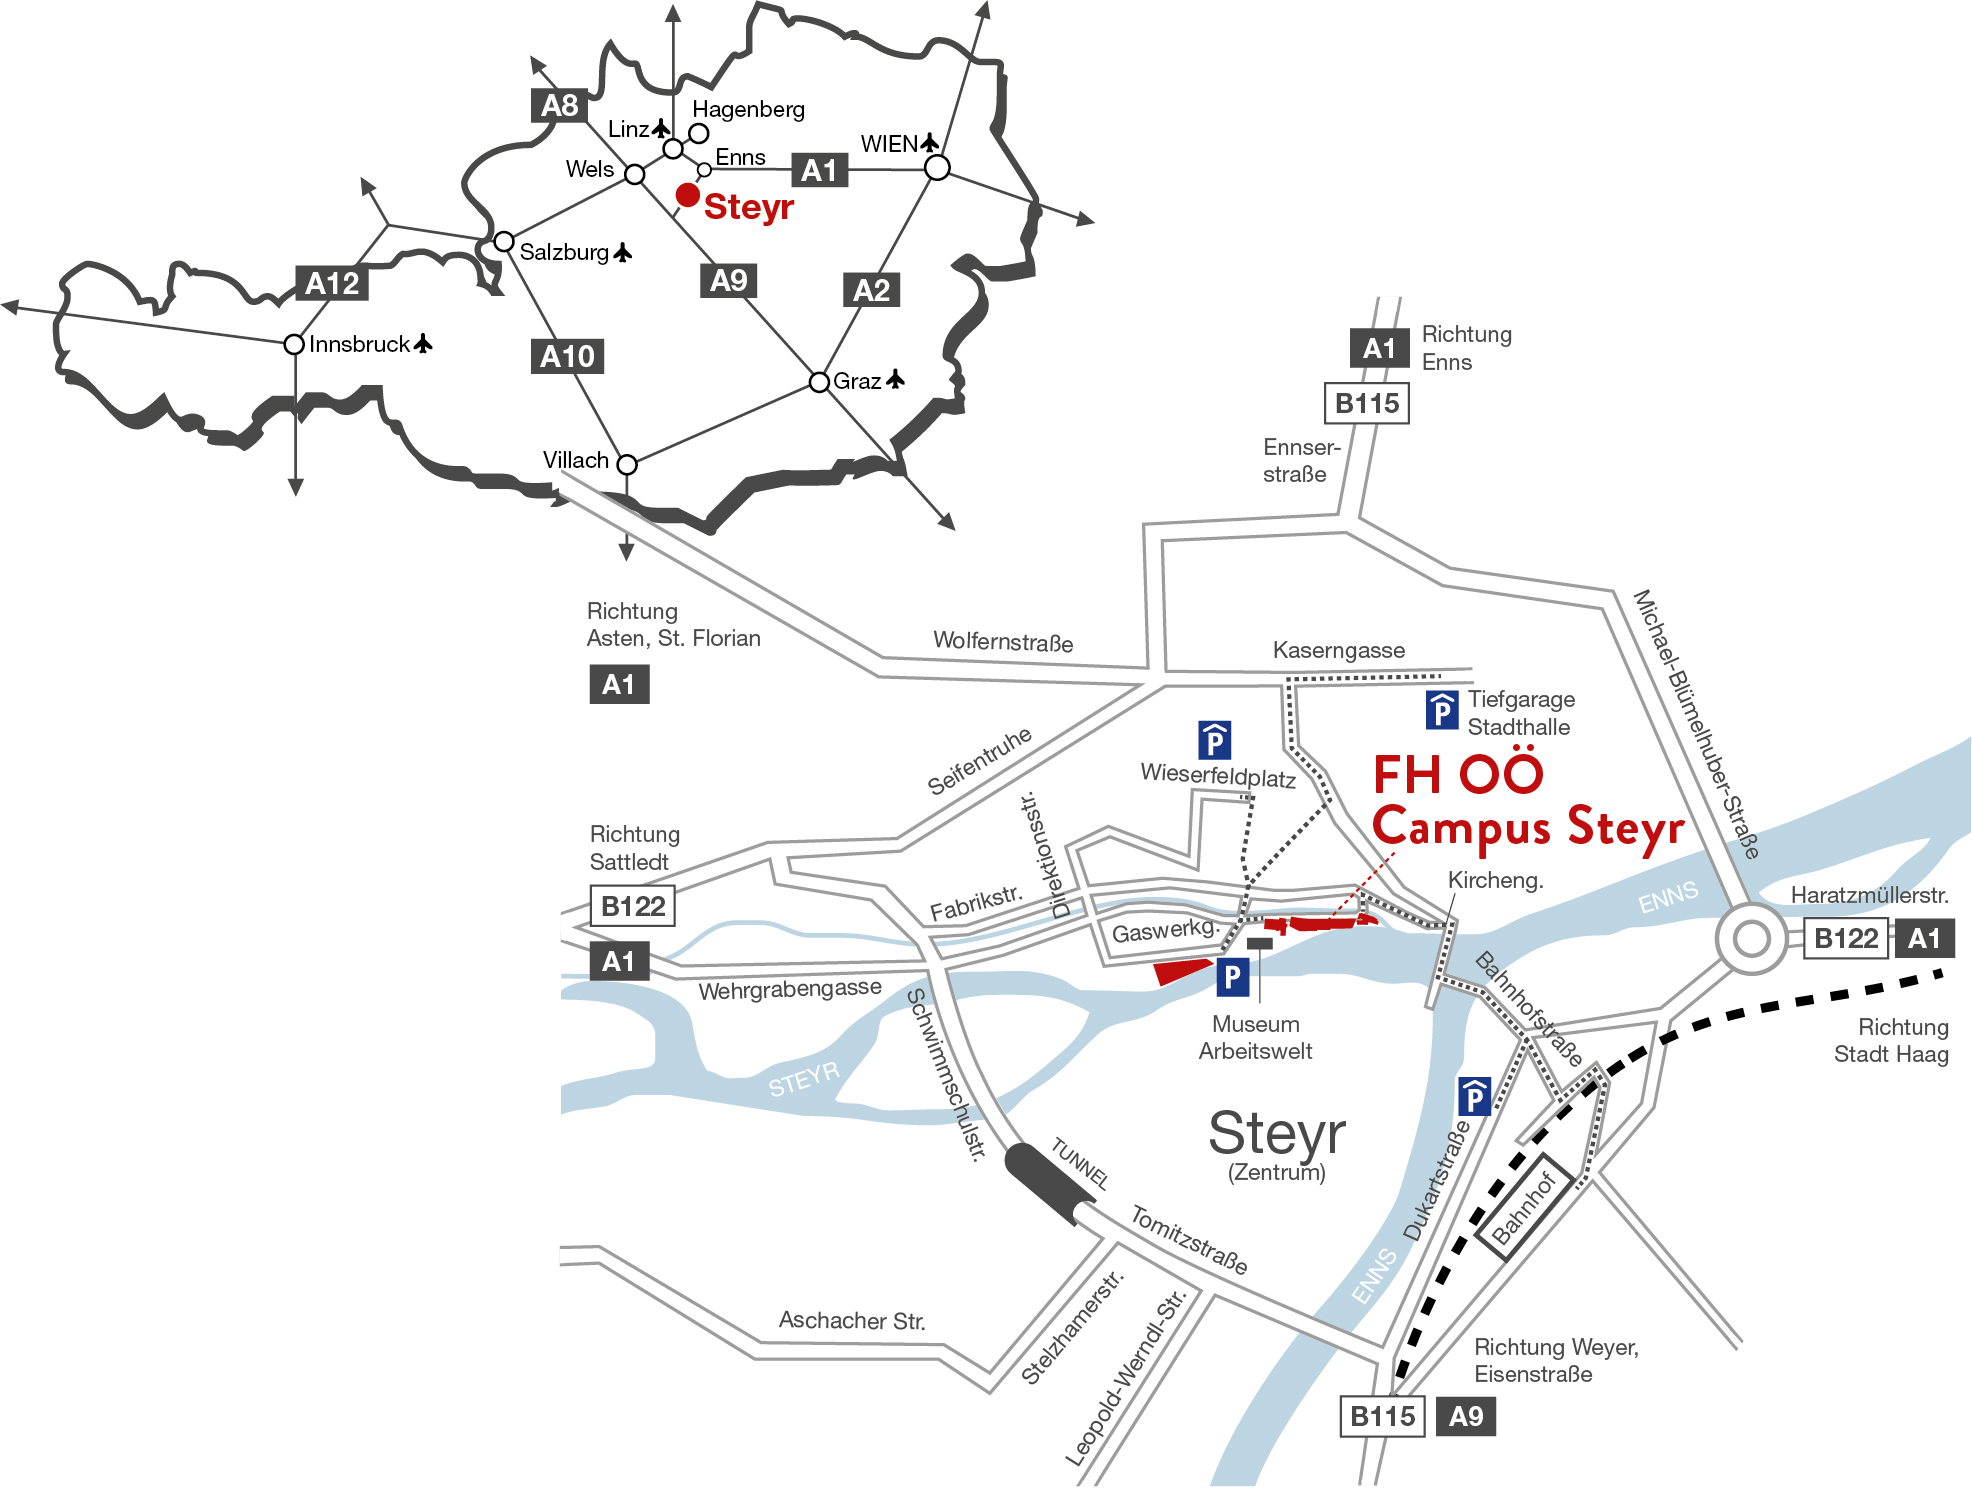 Zwei Karten. Die Obere ist eine Österreichkarte auf der die wichtigsten Städte eingezeichnet sind und Steyr noch einmal besonders hervorgehoben ist. Darunter ist eine Stadtkarte von Steyr mit eingezeichneten Tiefgaragen.